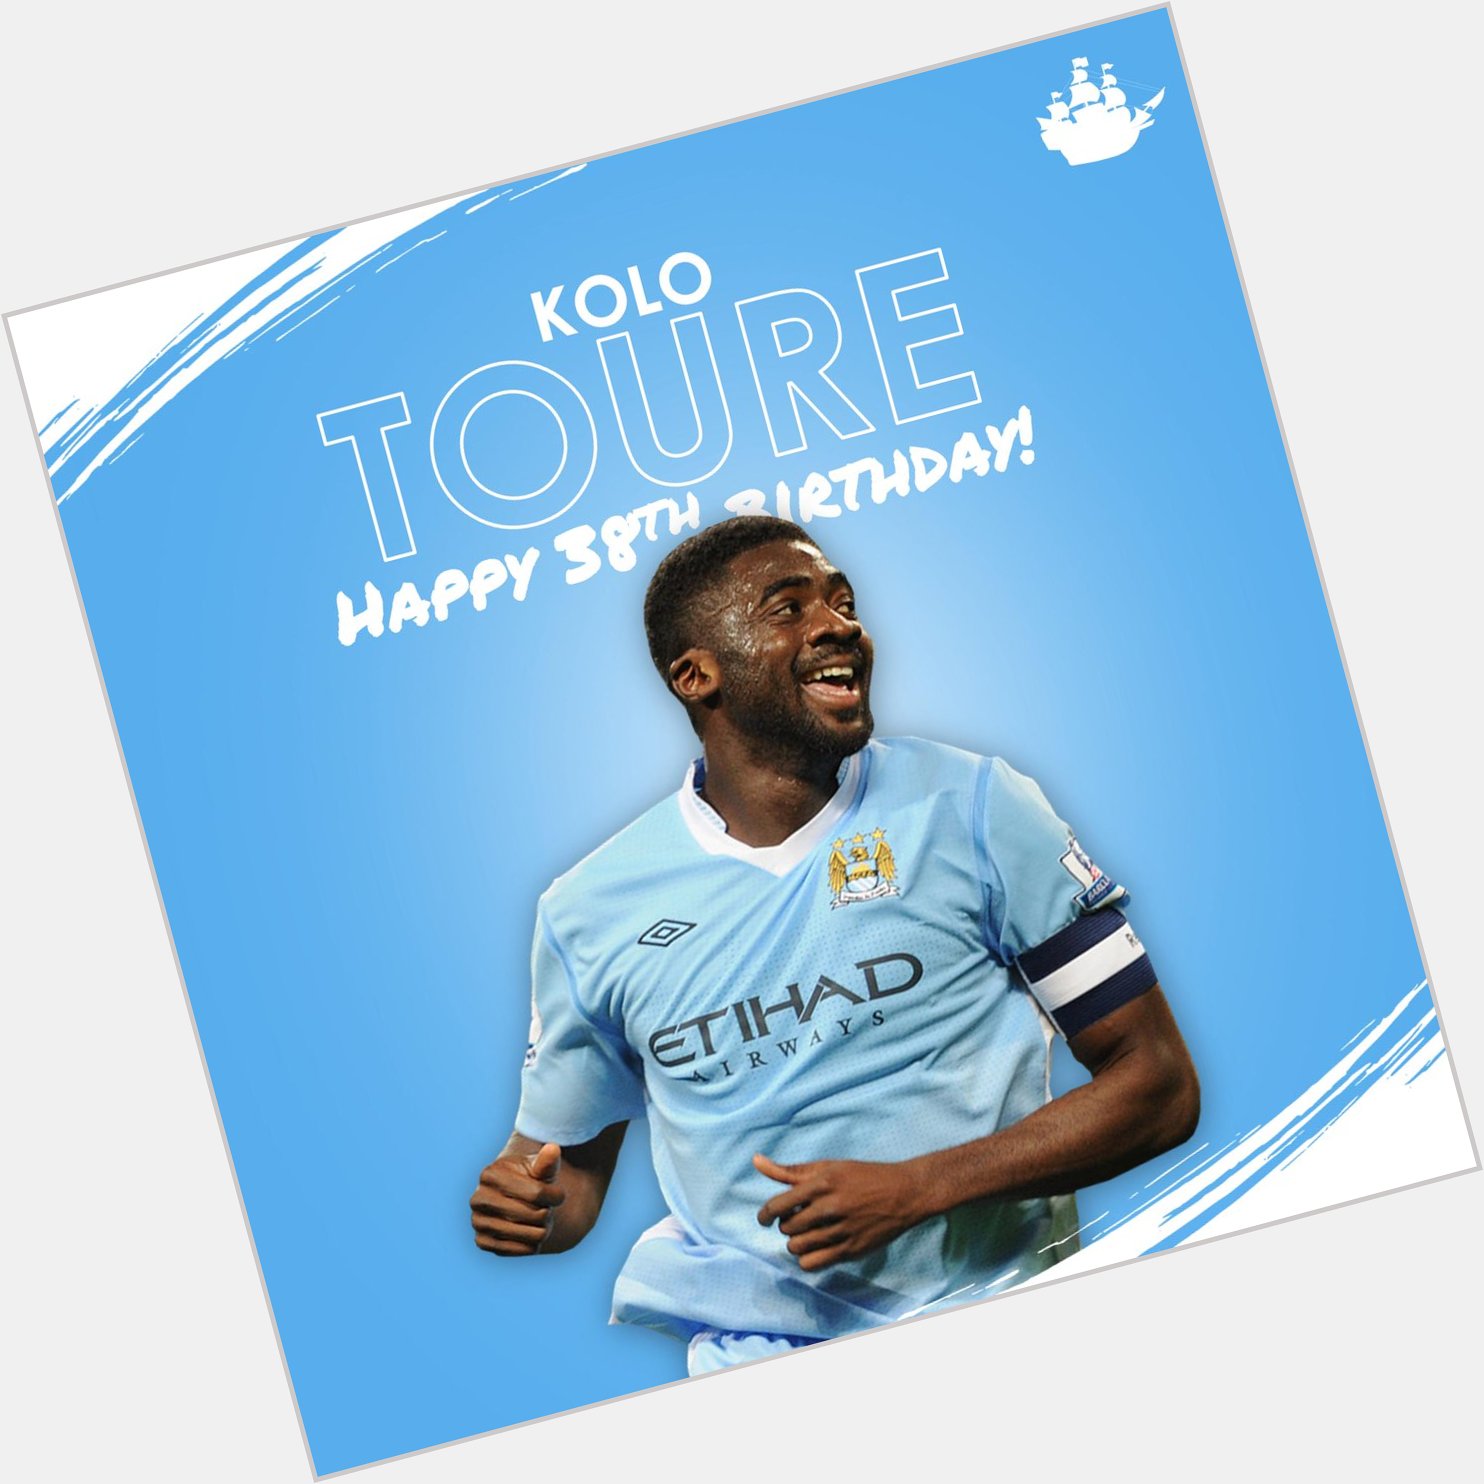 Happy birthday, Kolo Toure!  102 Games Premier League The FA Cup

Kolo, Kolo, Kolo, Kolo, Kolo... 